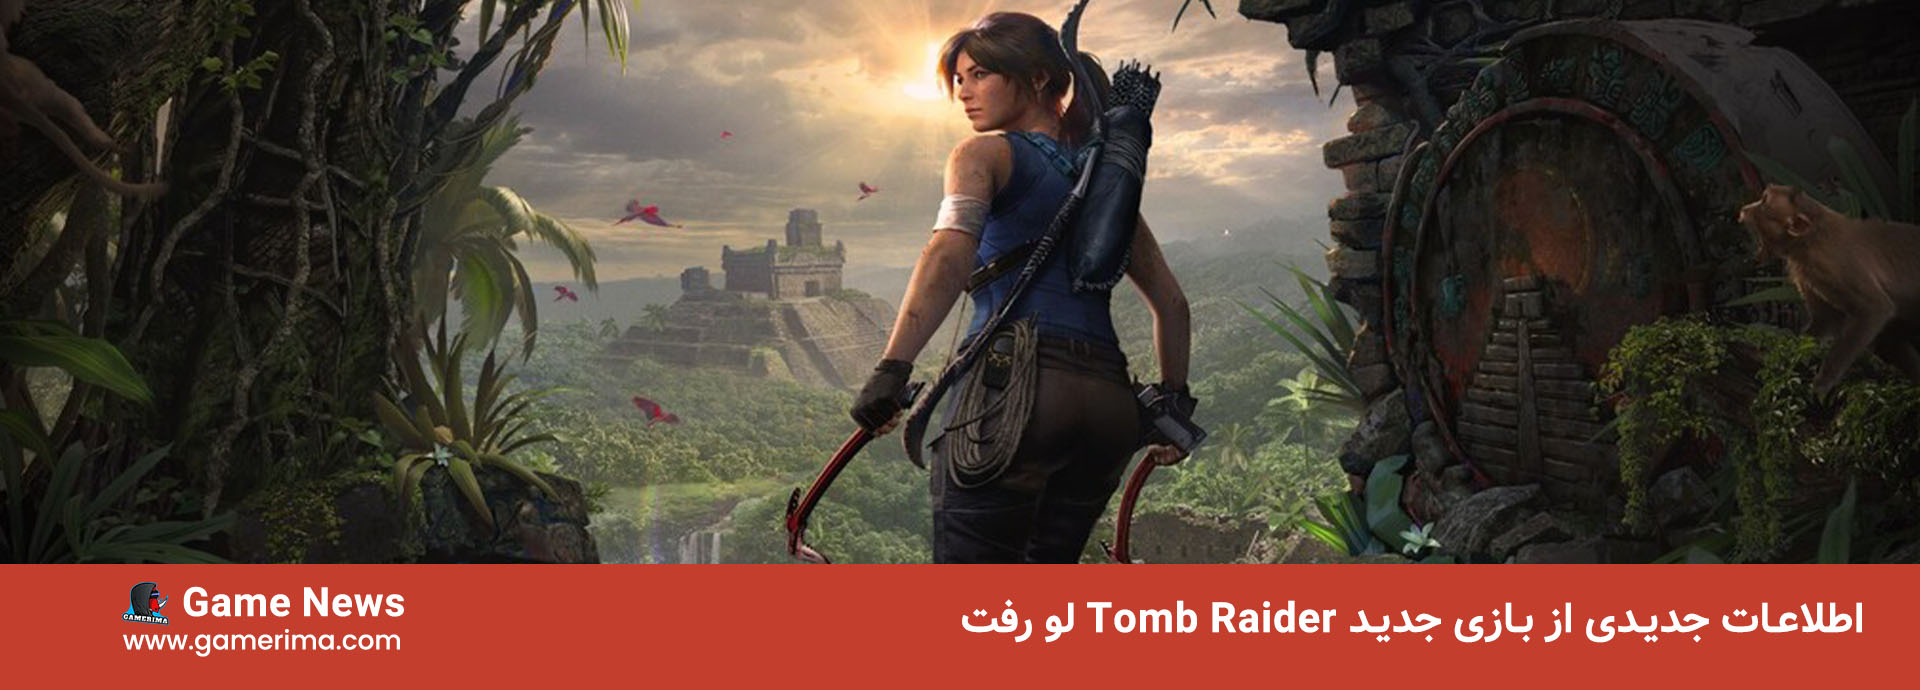 اطلاعات جدیدی از بازی جدید Tomb Raider لو رفت